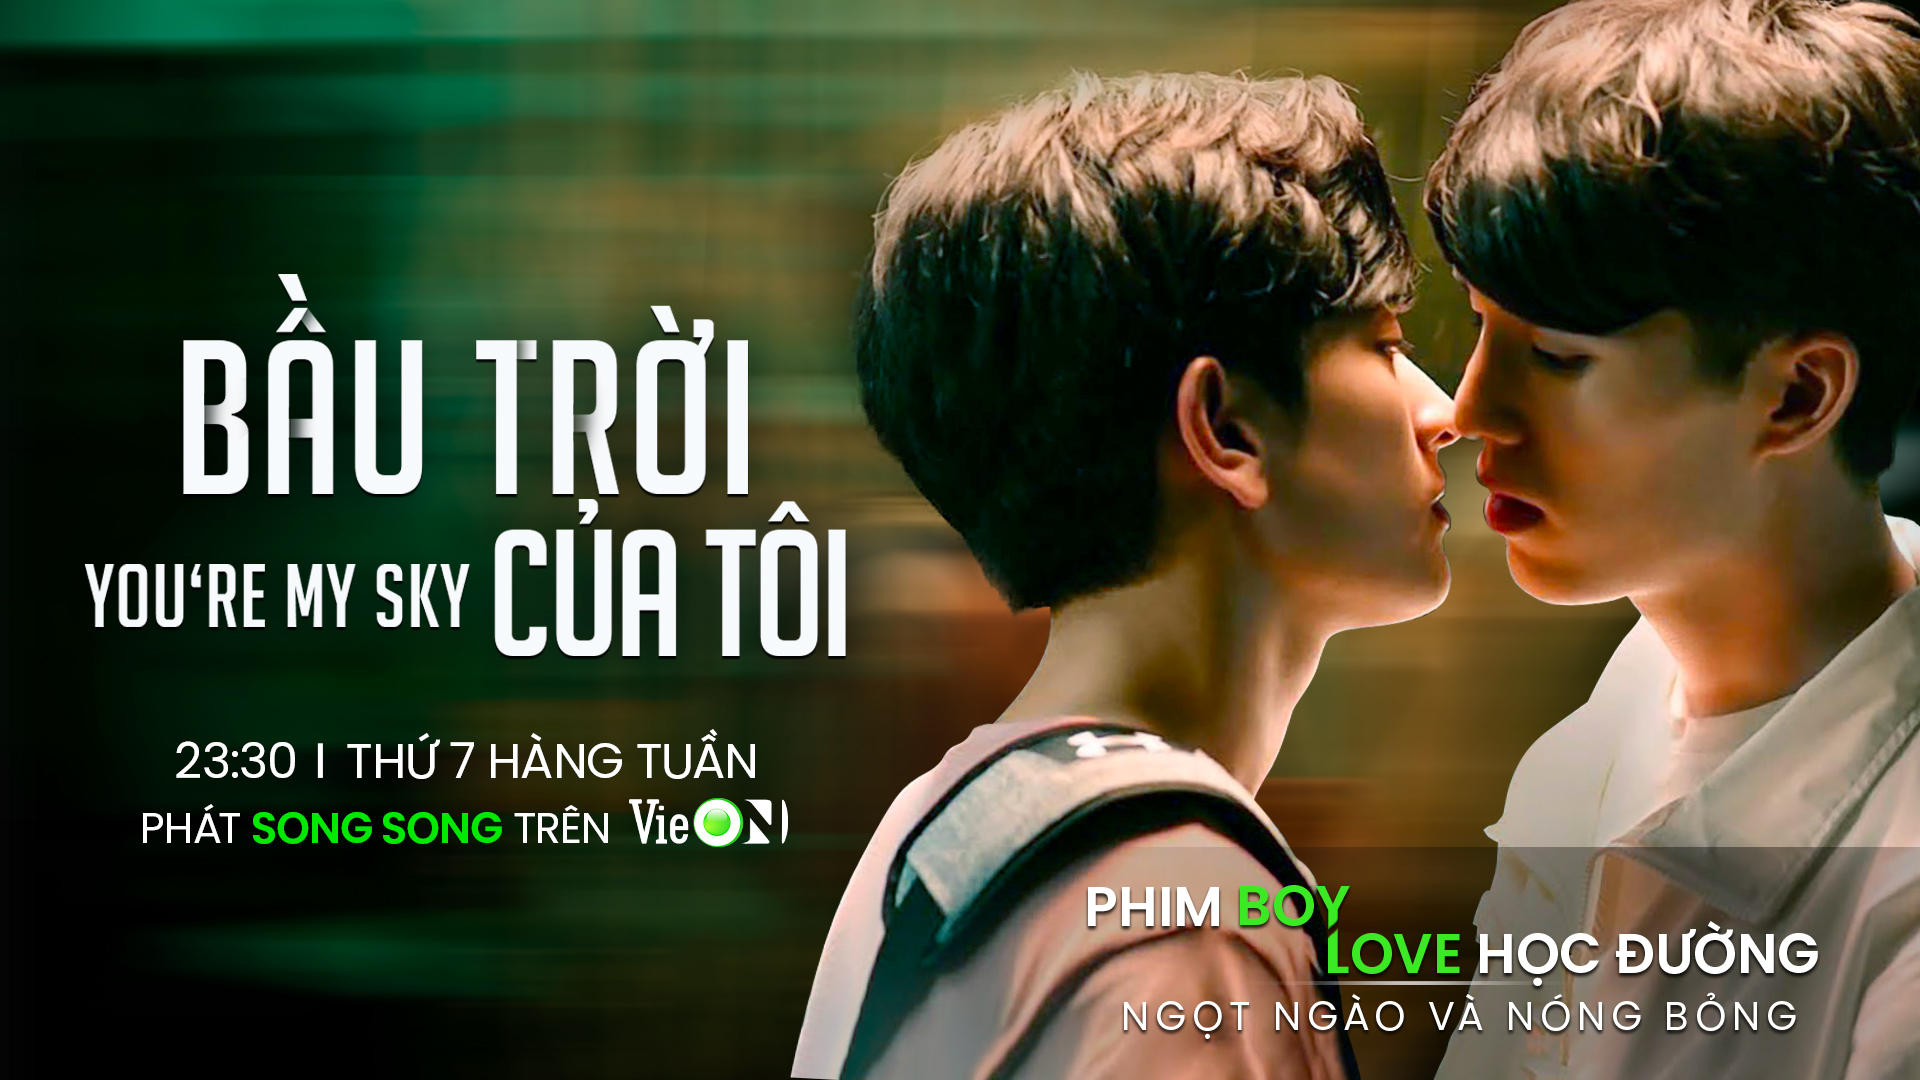 Phim mới của Lý Dịch Phong, Tống Tổ Nhi và đam mỹ Thái “đổ bộ” VieON